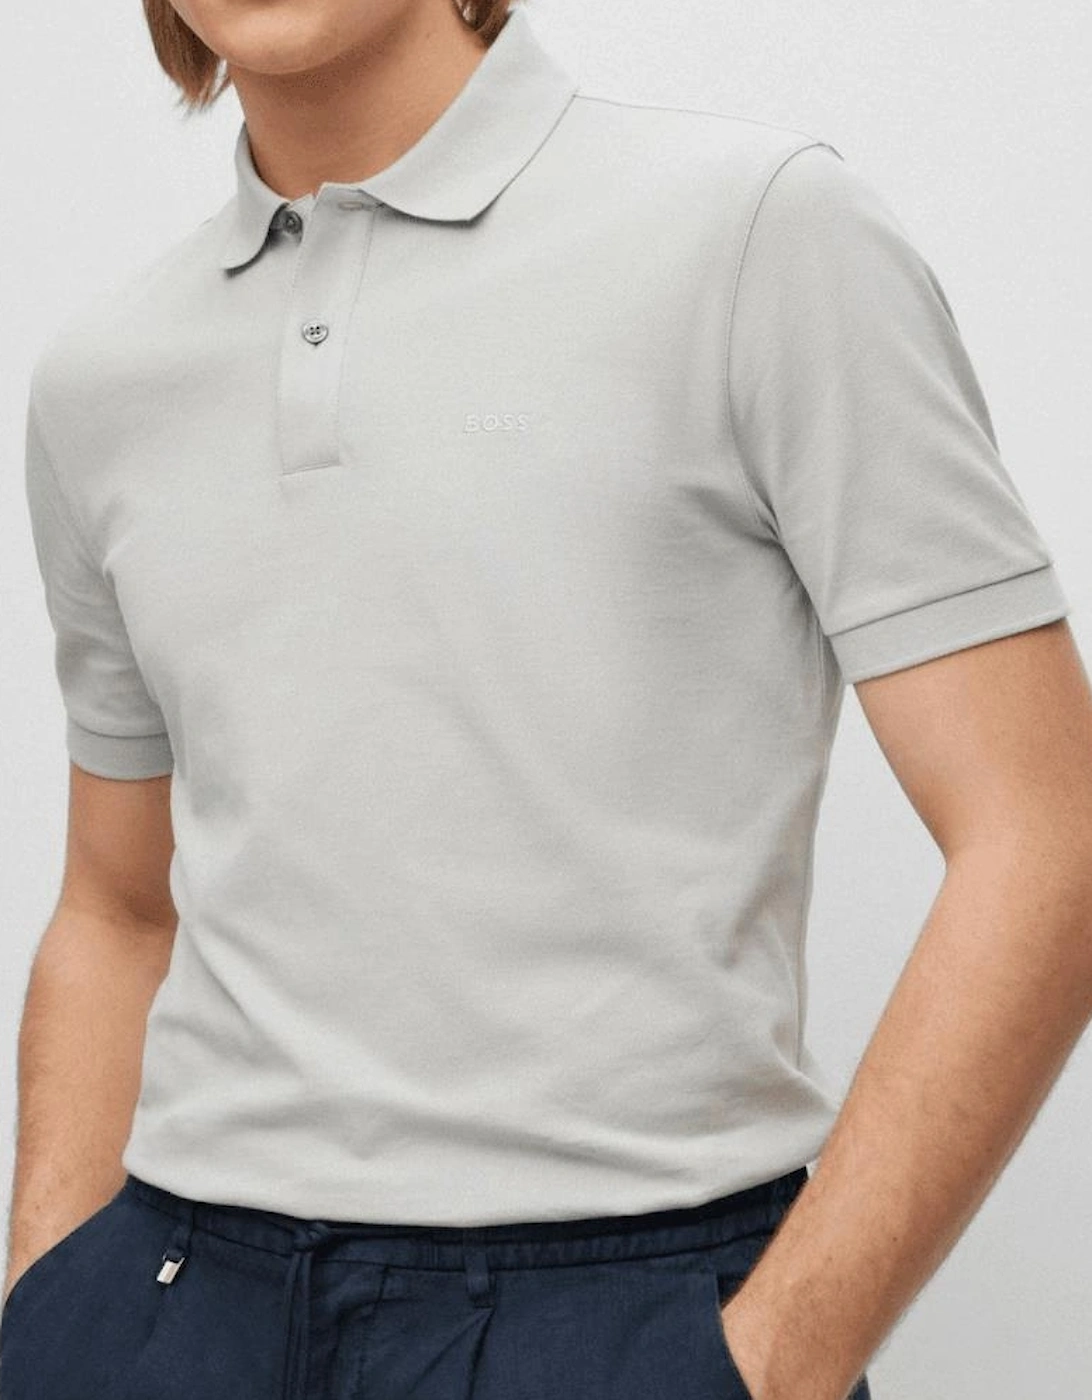 Pallas Cotton Grey Polo Shirt